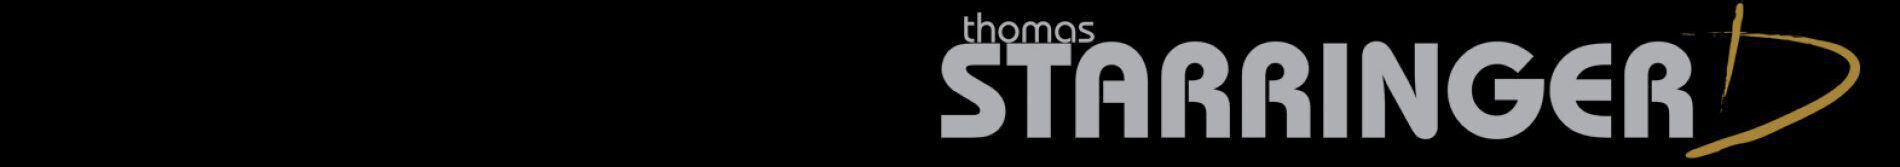 thomasstarringer.com